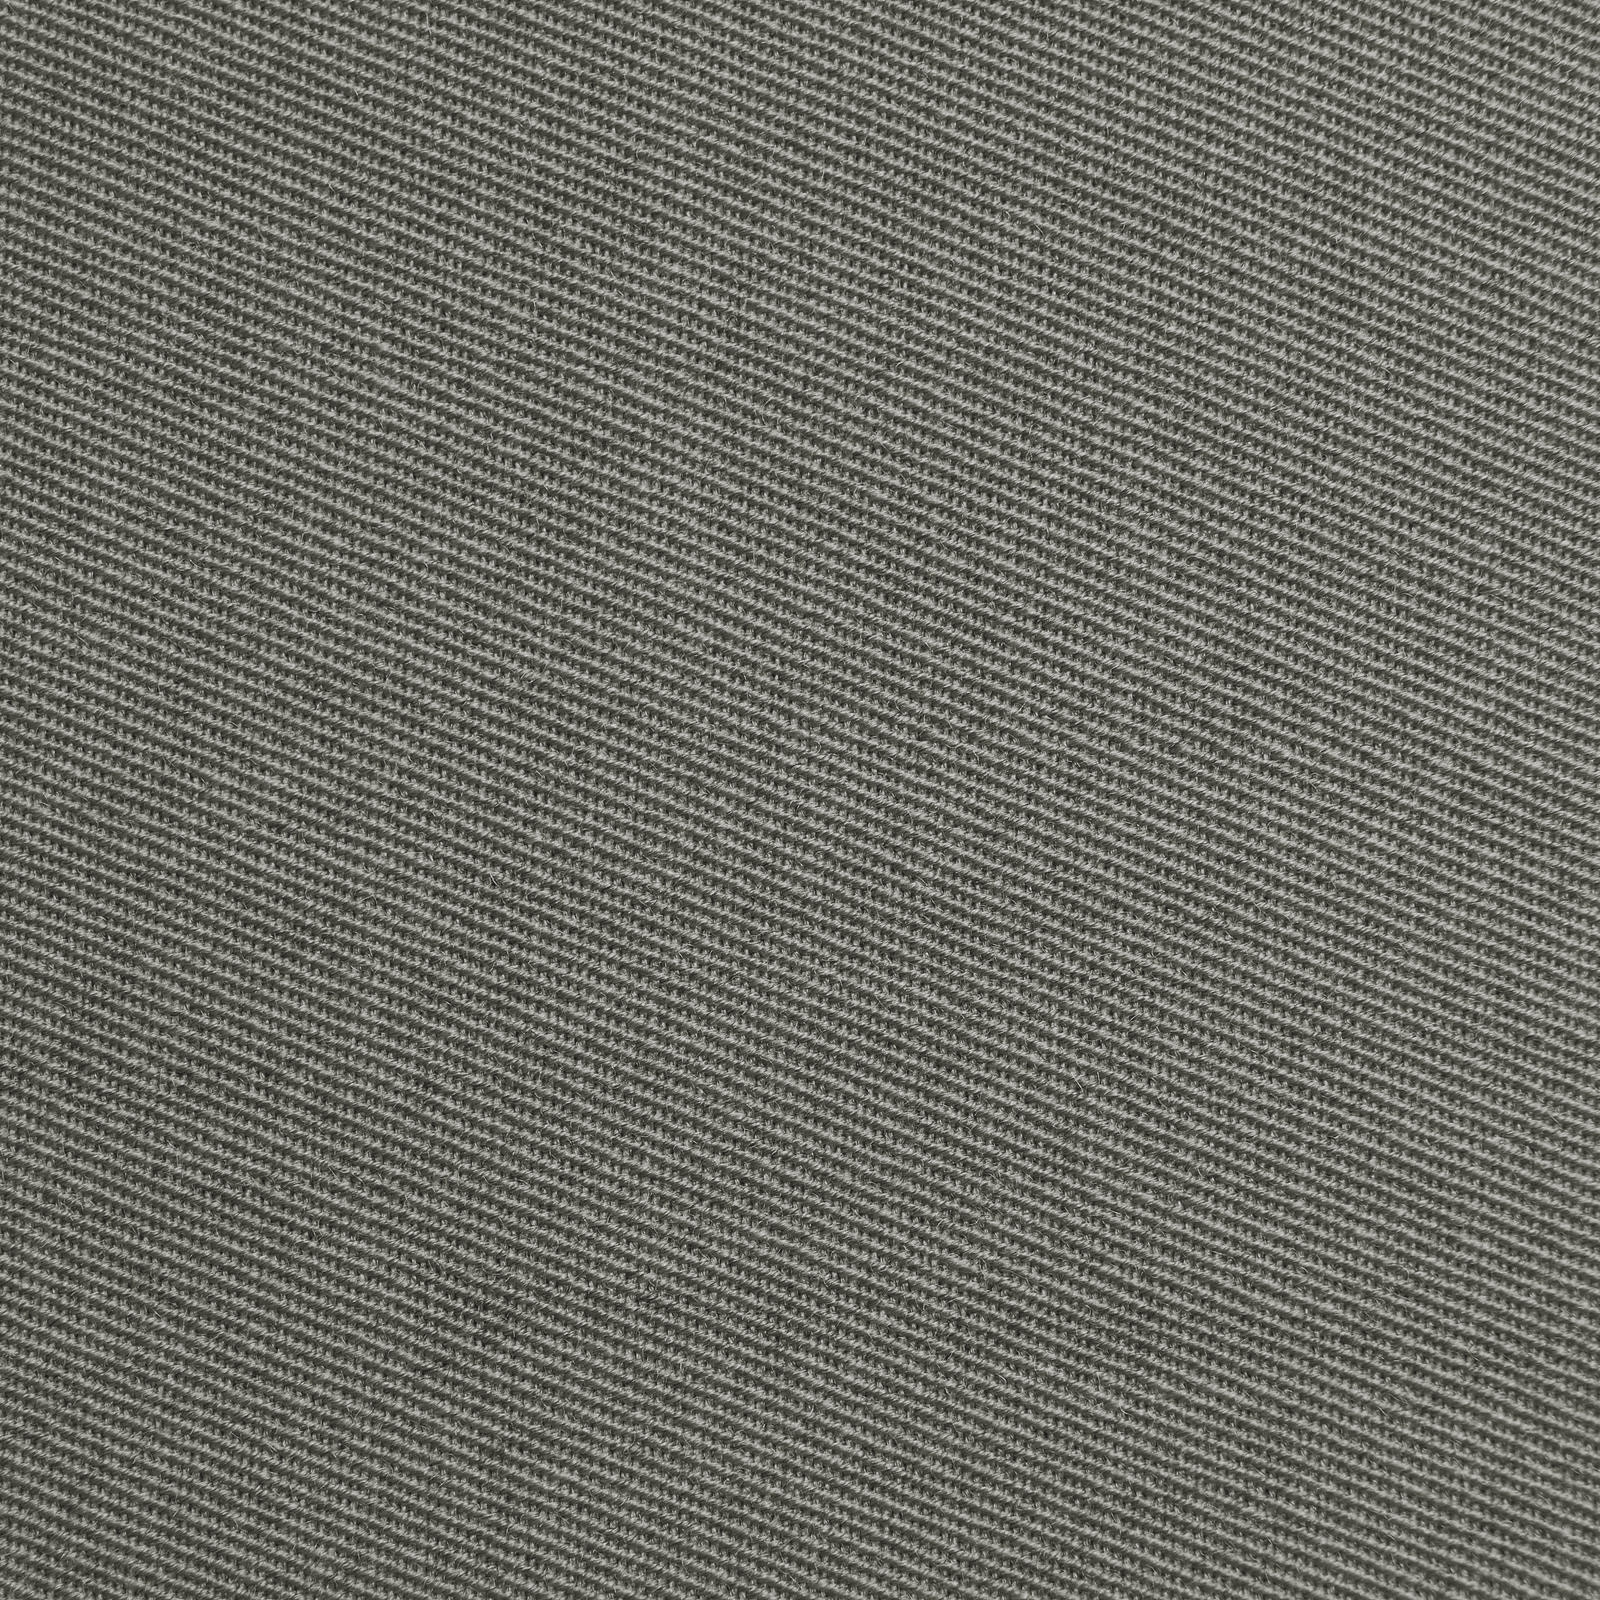 Franziska - pano de lã / pano uniforme (cinzento)